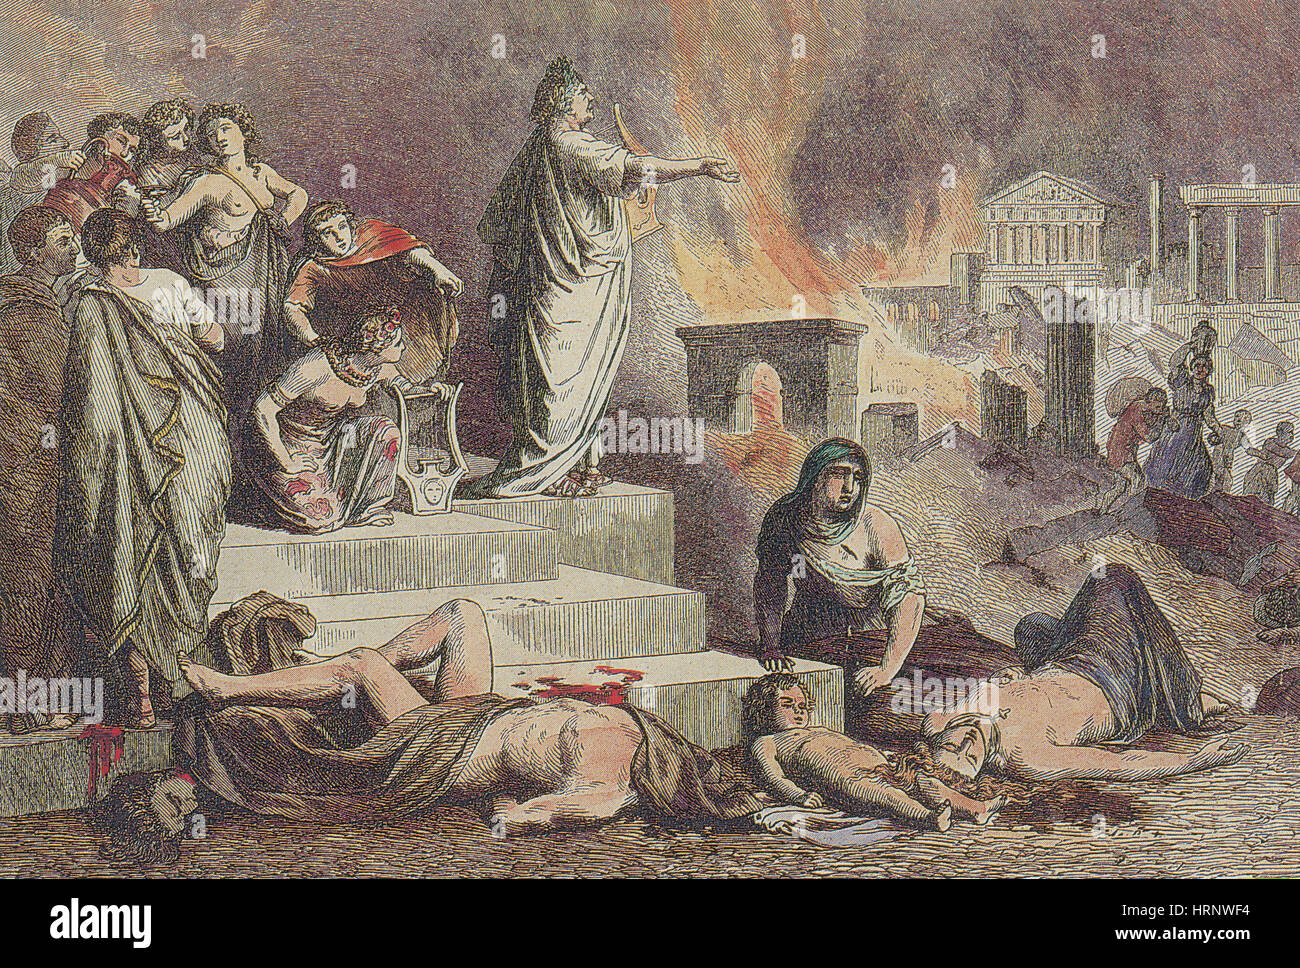 Nero und dem großen Brand Roms 64 n. Chr. Stockfoto